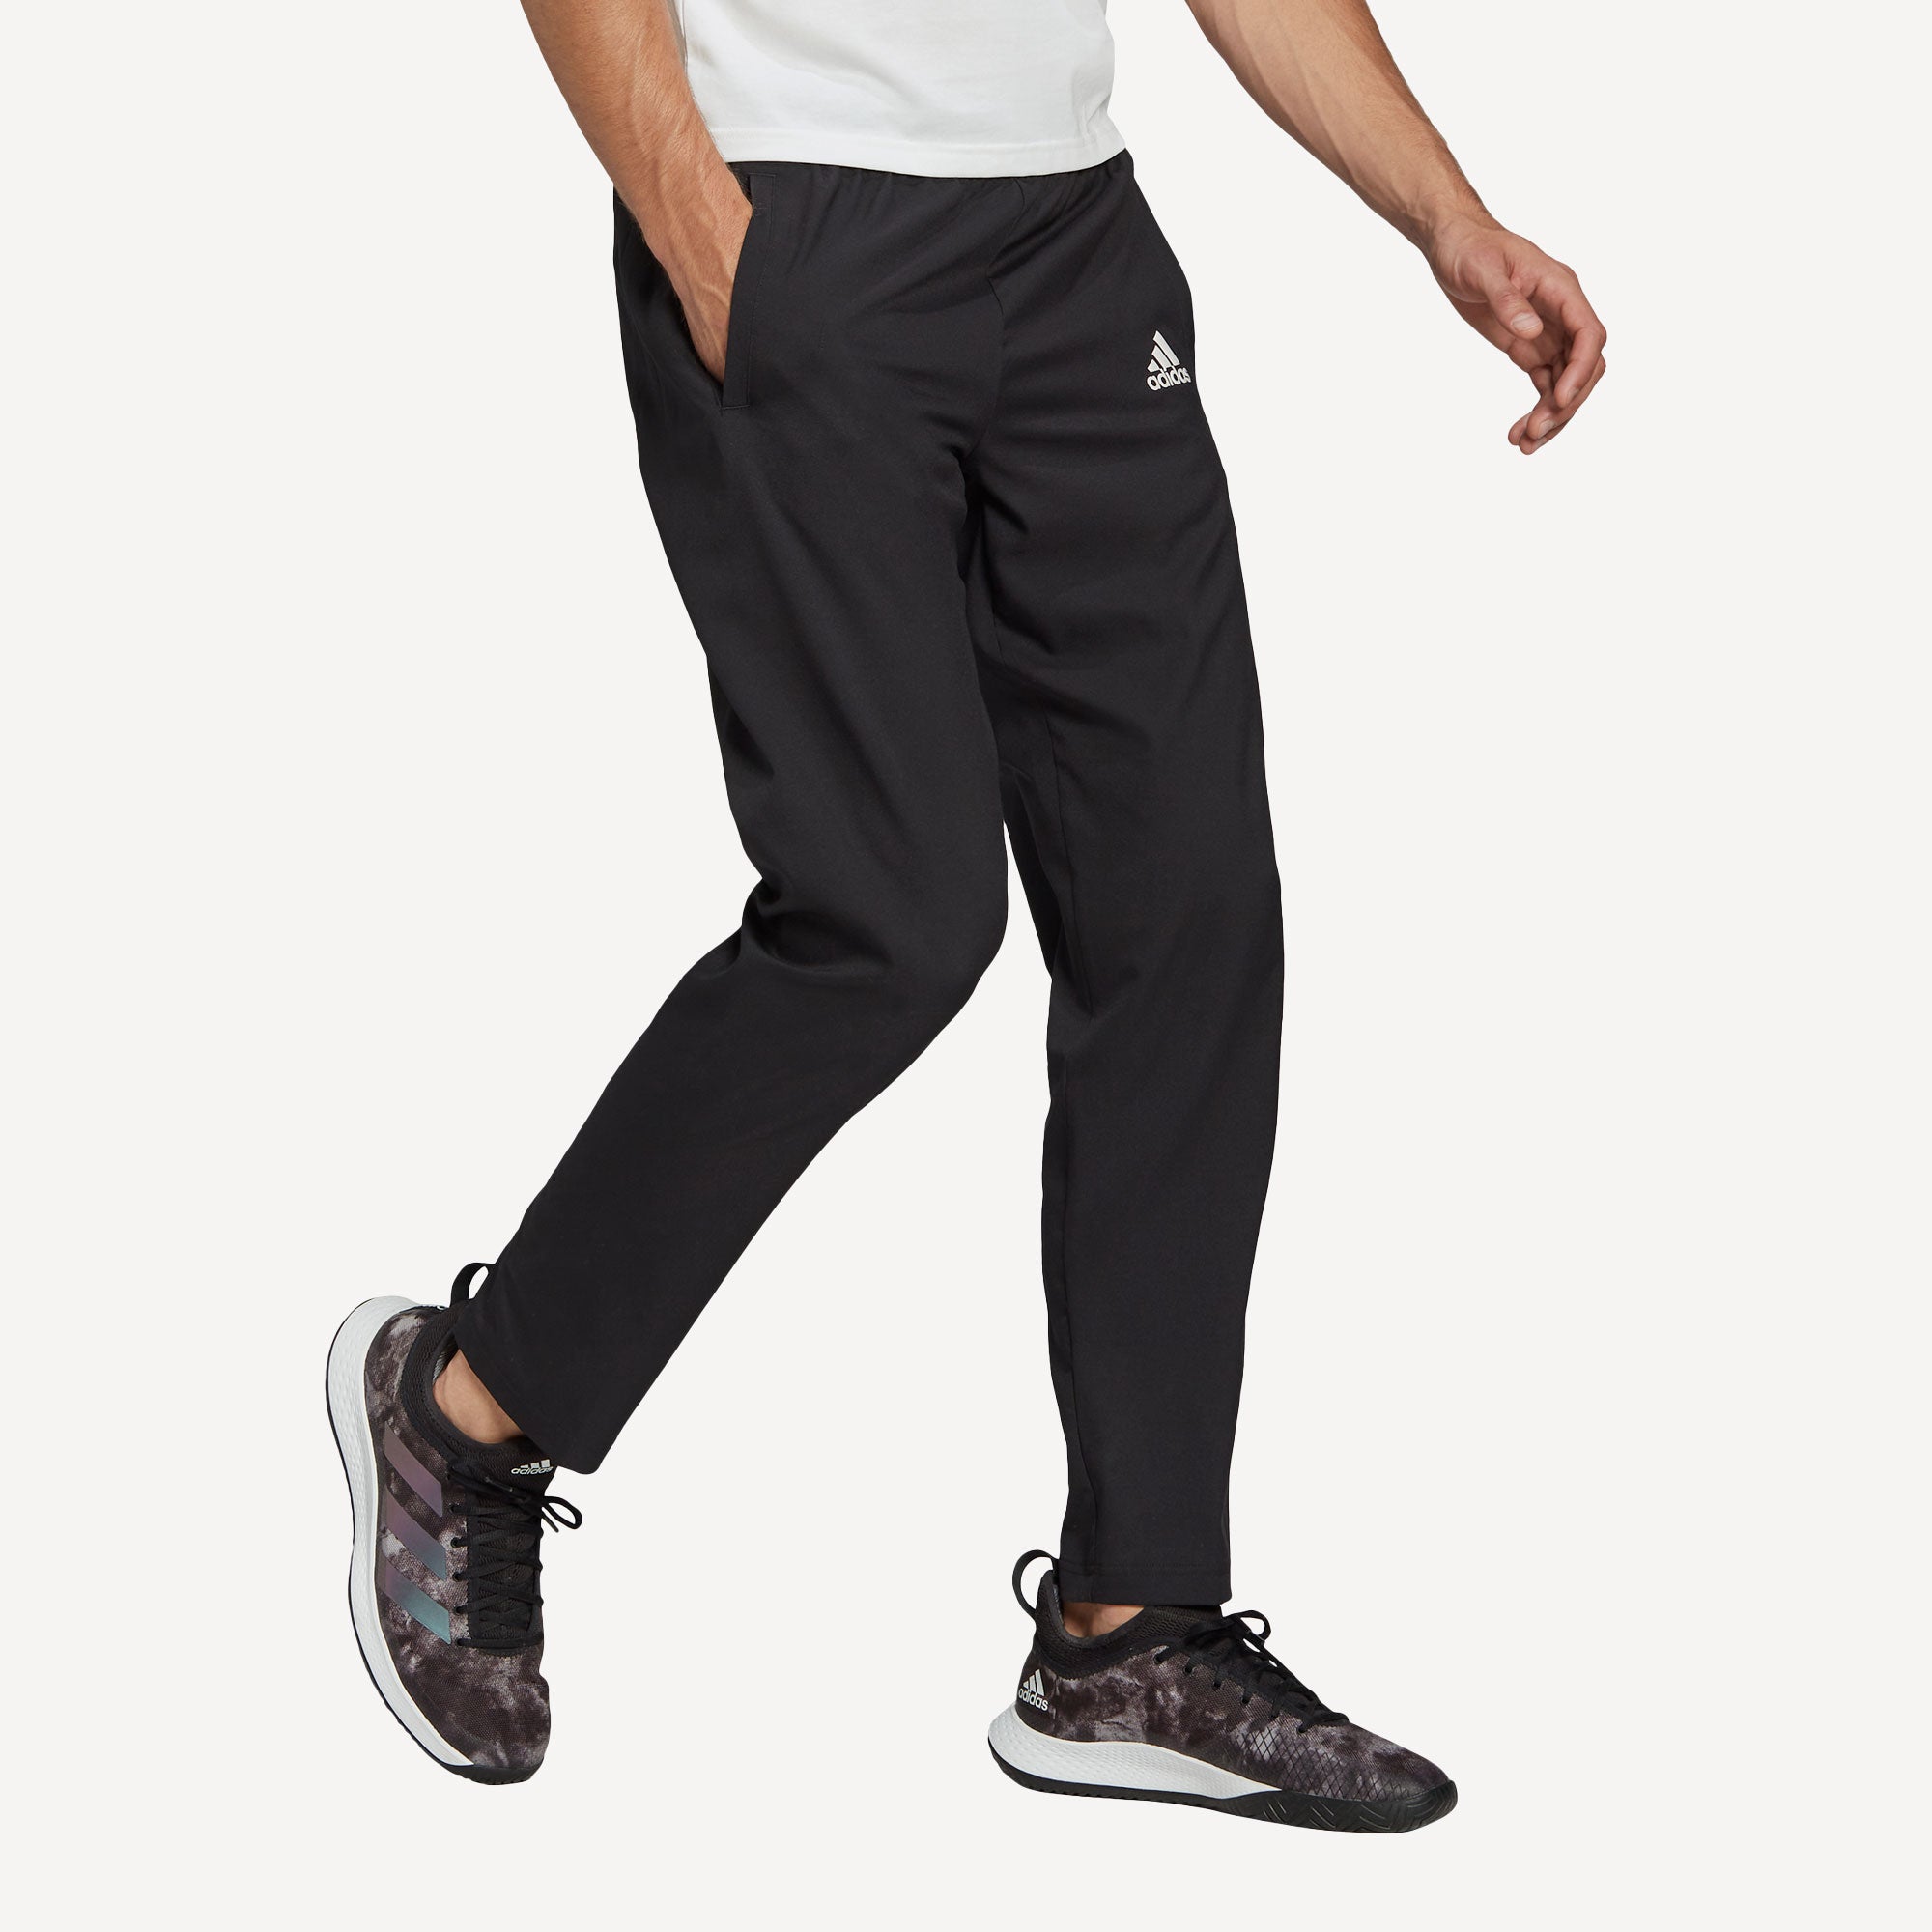 adidas Melbourne Men's Stretch Woven Tennis Pants Black (3)